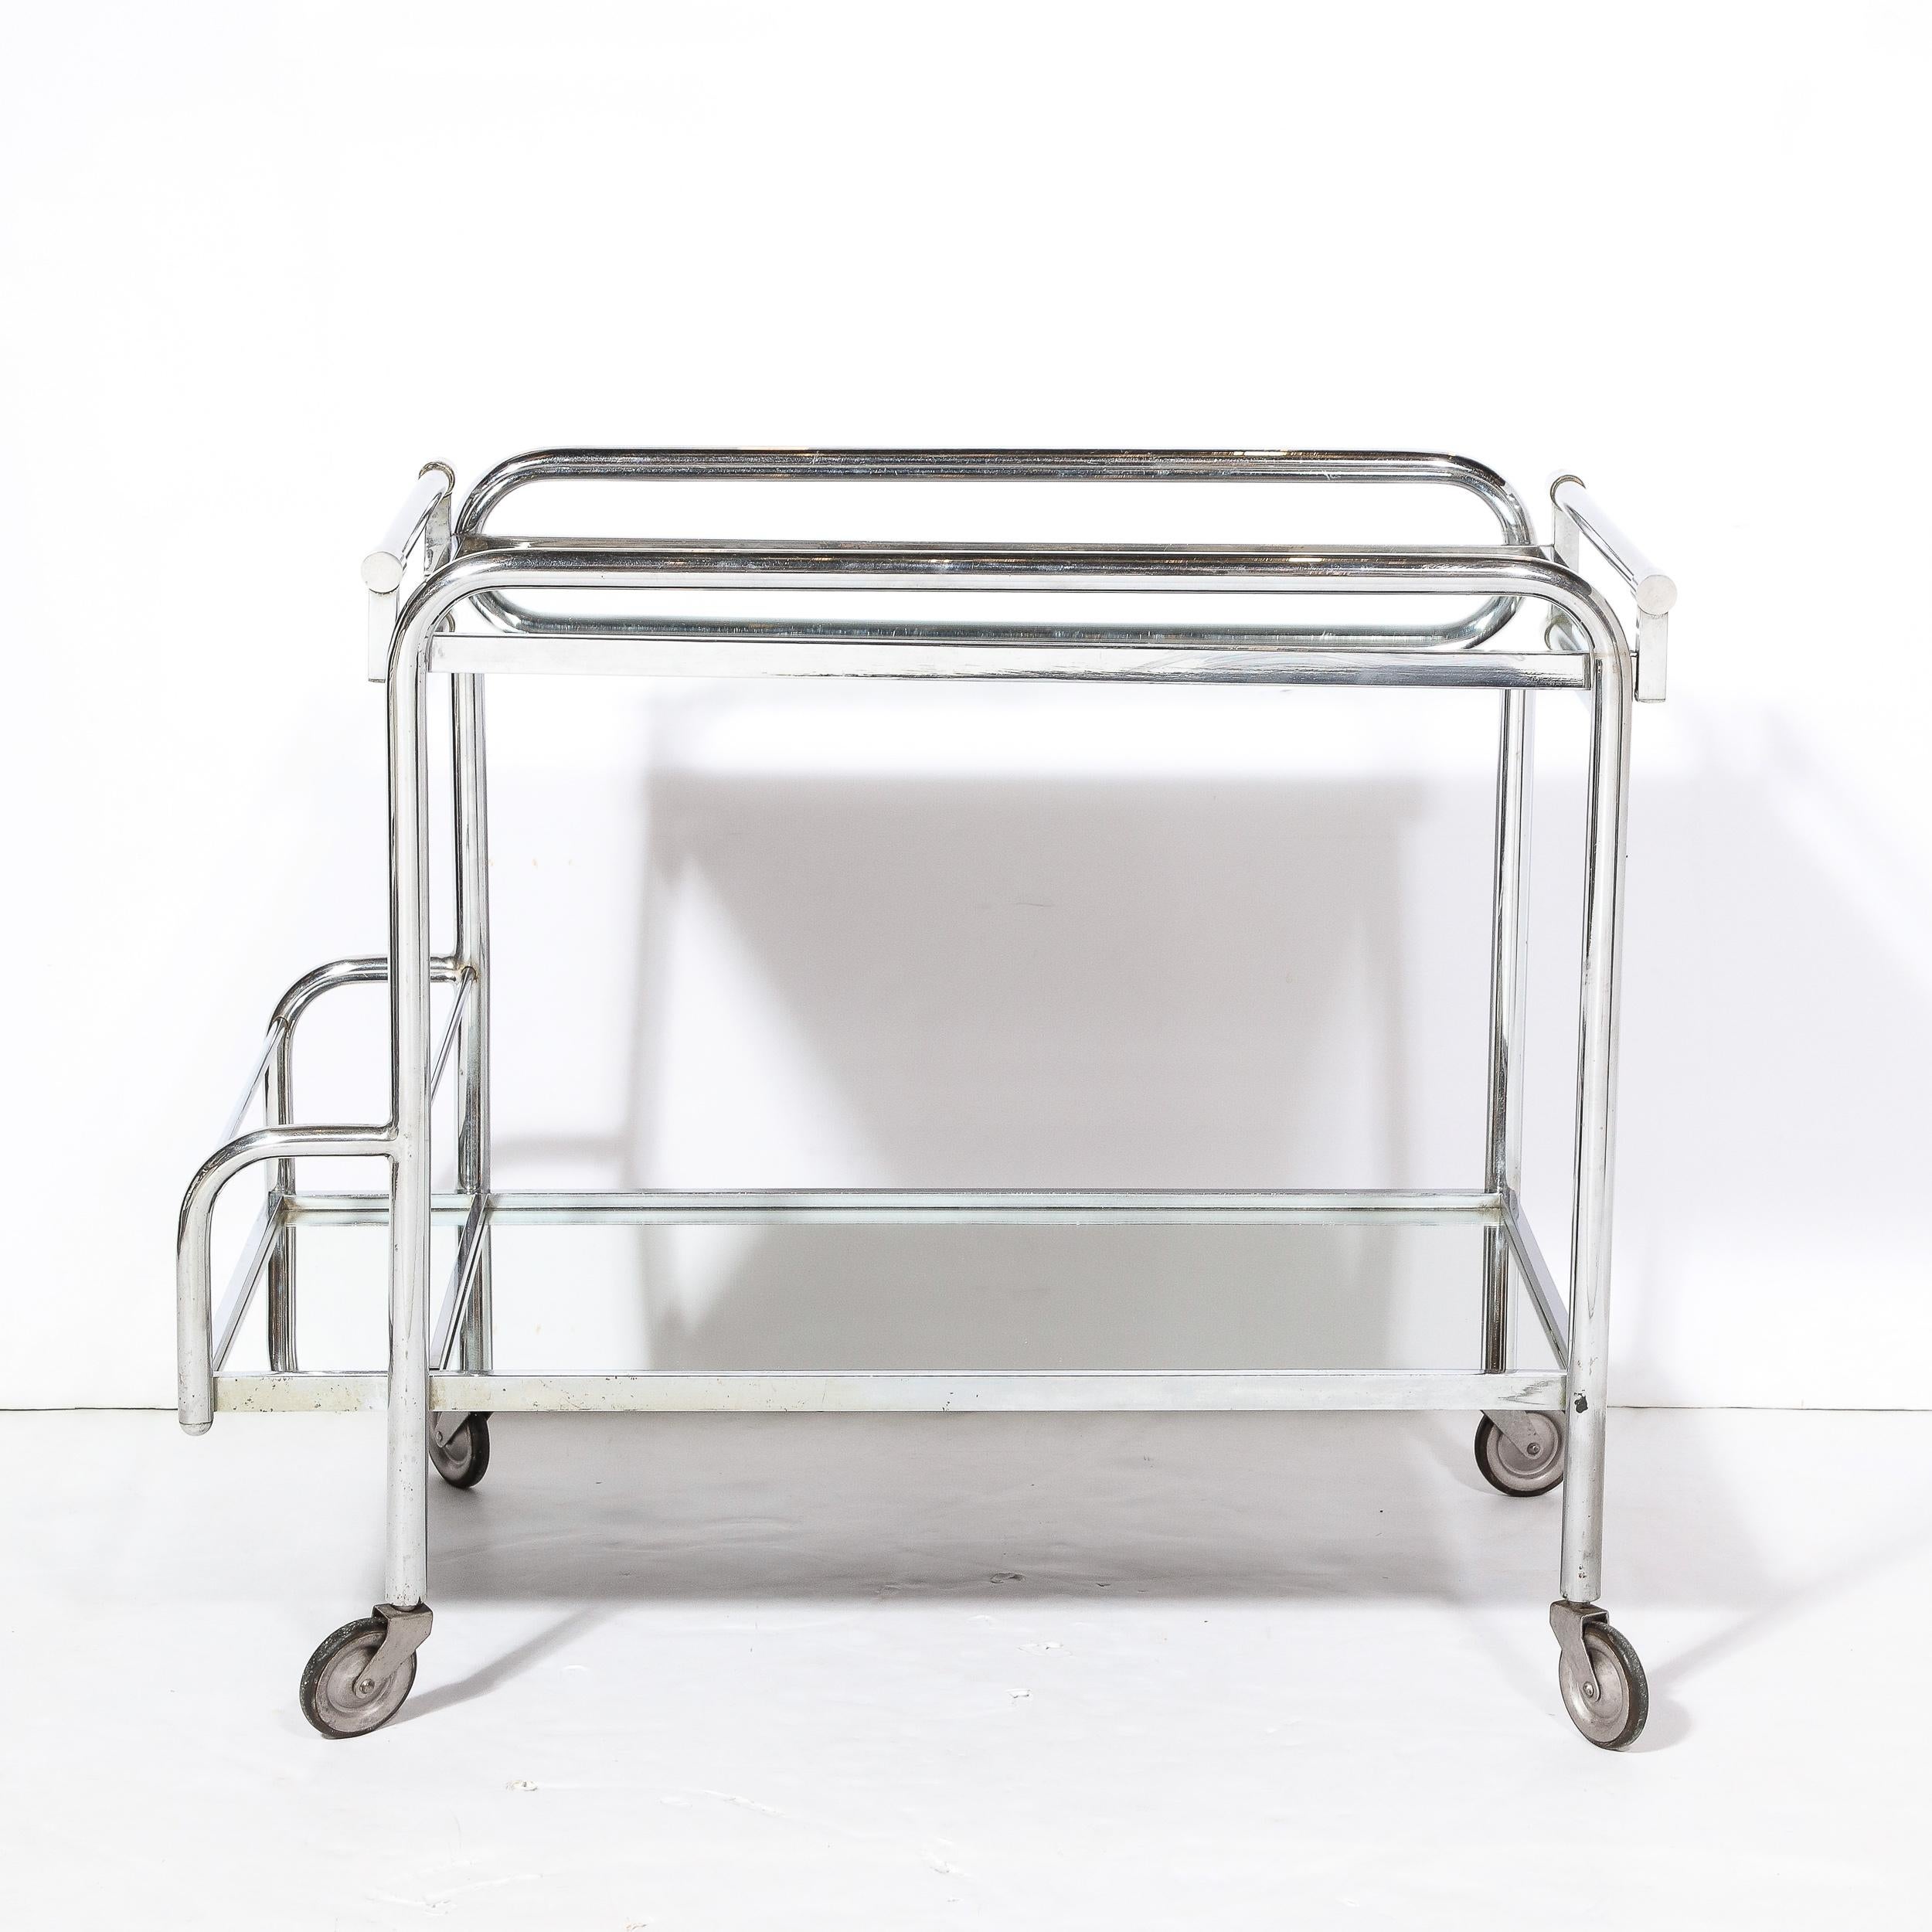 Dieser elegante und schlichte Art Deco Machin Age Two-Tier Bar Cart in Chrom und Spiegel  wurde von Jacques Adnet hergestellt und stammt aus Frankreich, ca. 1935. Die Proportionen und die minimale geometrische Konstruktion verleihen dem Stück ein